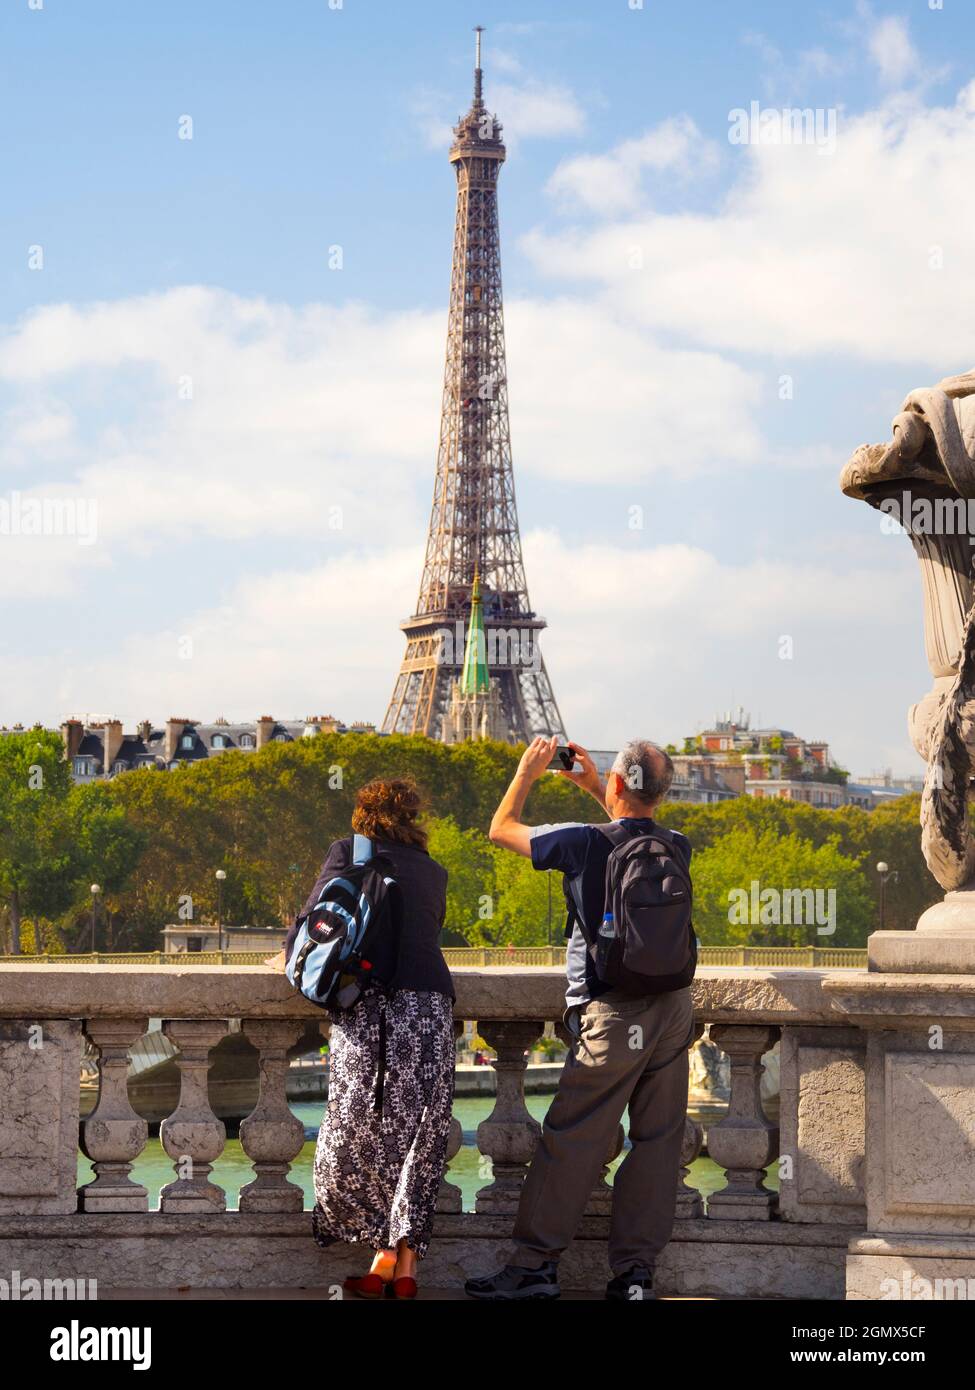 Paris, France - 18 septembre 2018 ; deux touristes en plein air construit pour l'exposition universelle de 1889, la Tour Eiffel de 324 mètres (1,063 pieds) est devenue une Banque D'Images